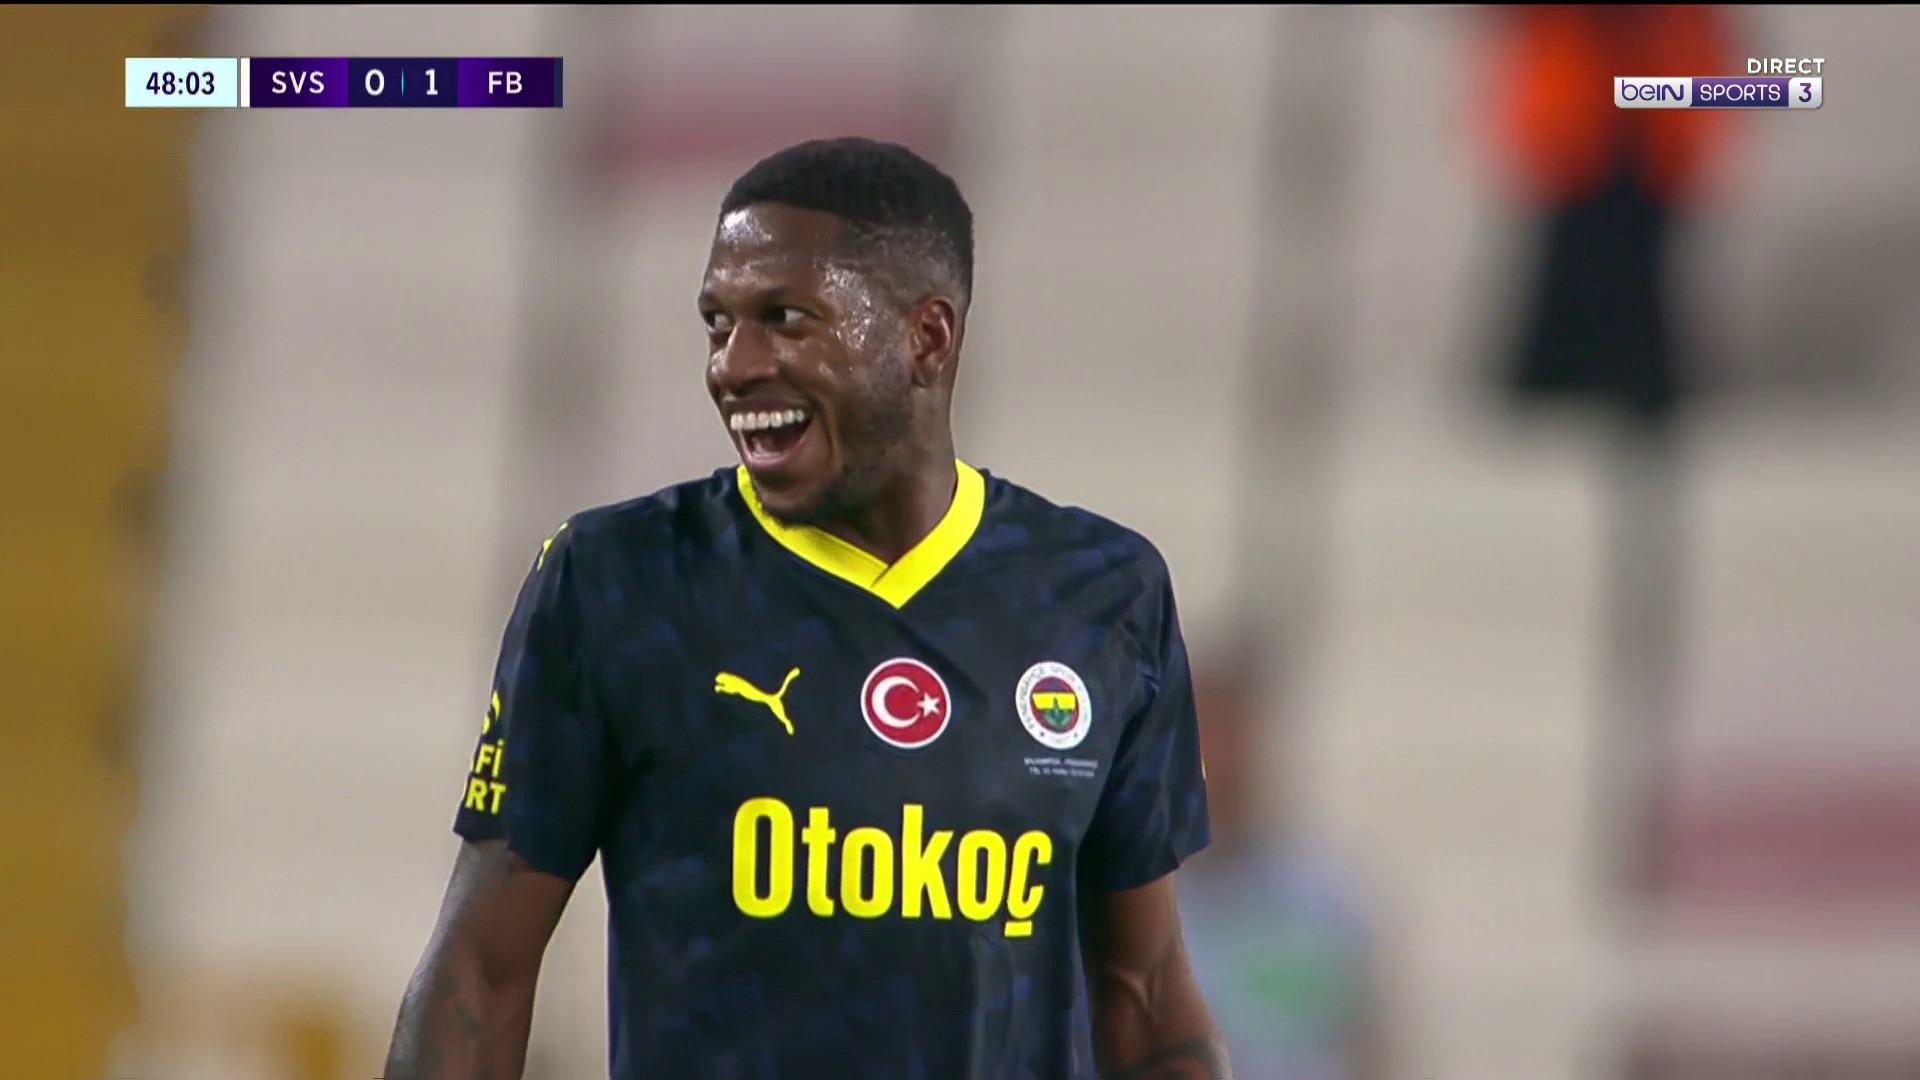 Süper Lig : Fred nettoie la lucarne de Sivasspor avec ce missile téléguidé !